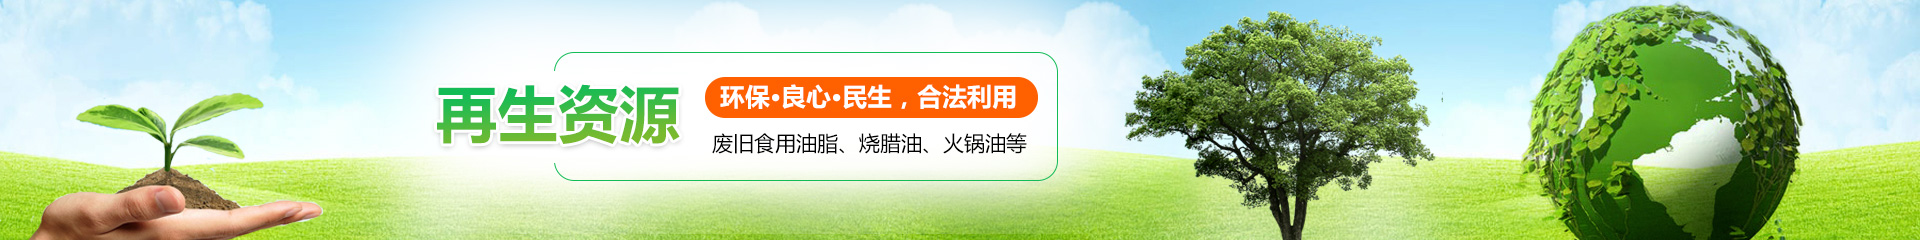 深圳市海港再生资源有限公司-烤鸭油回收烤鸭油回收3